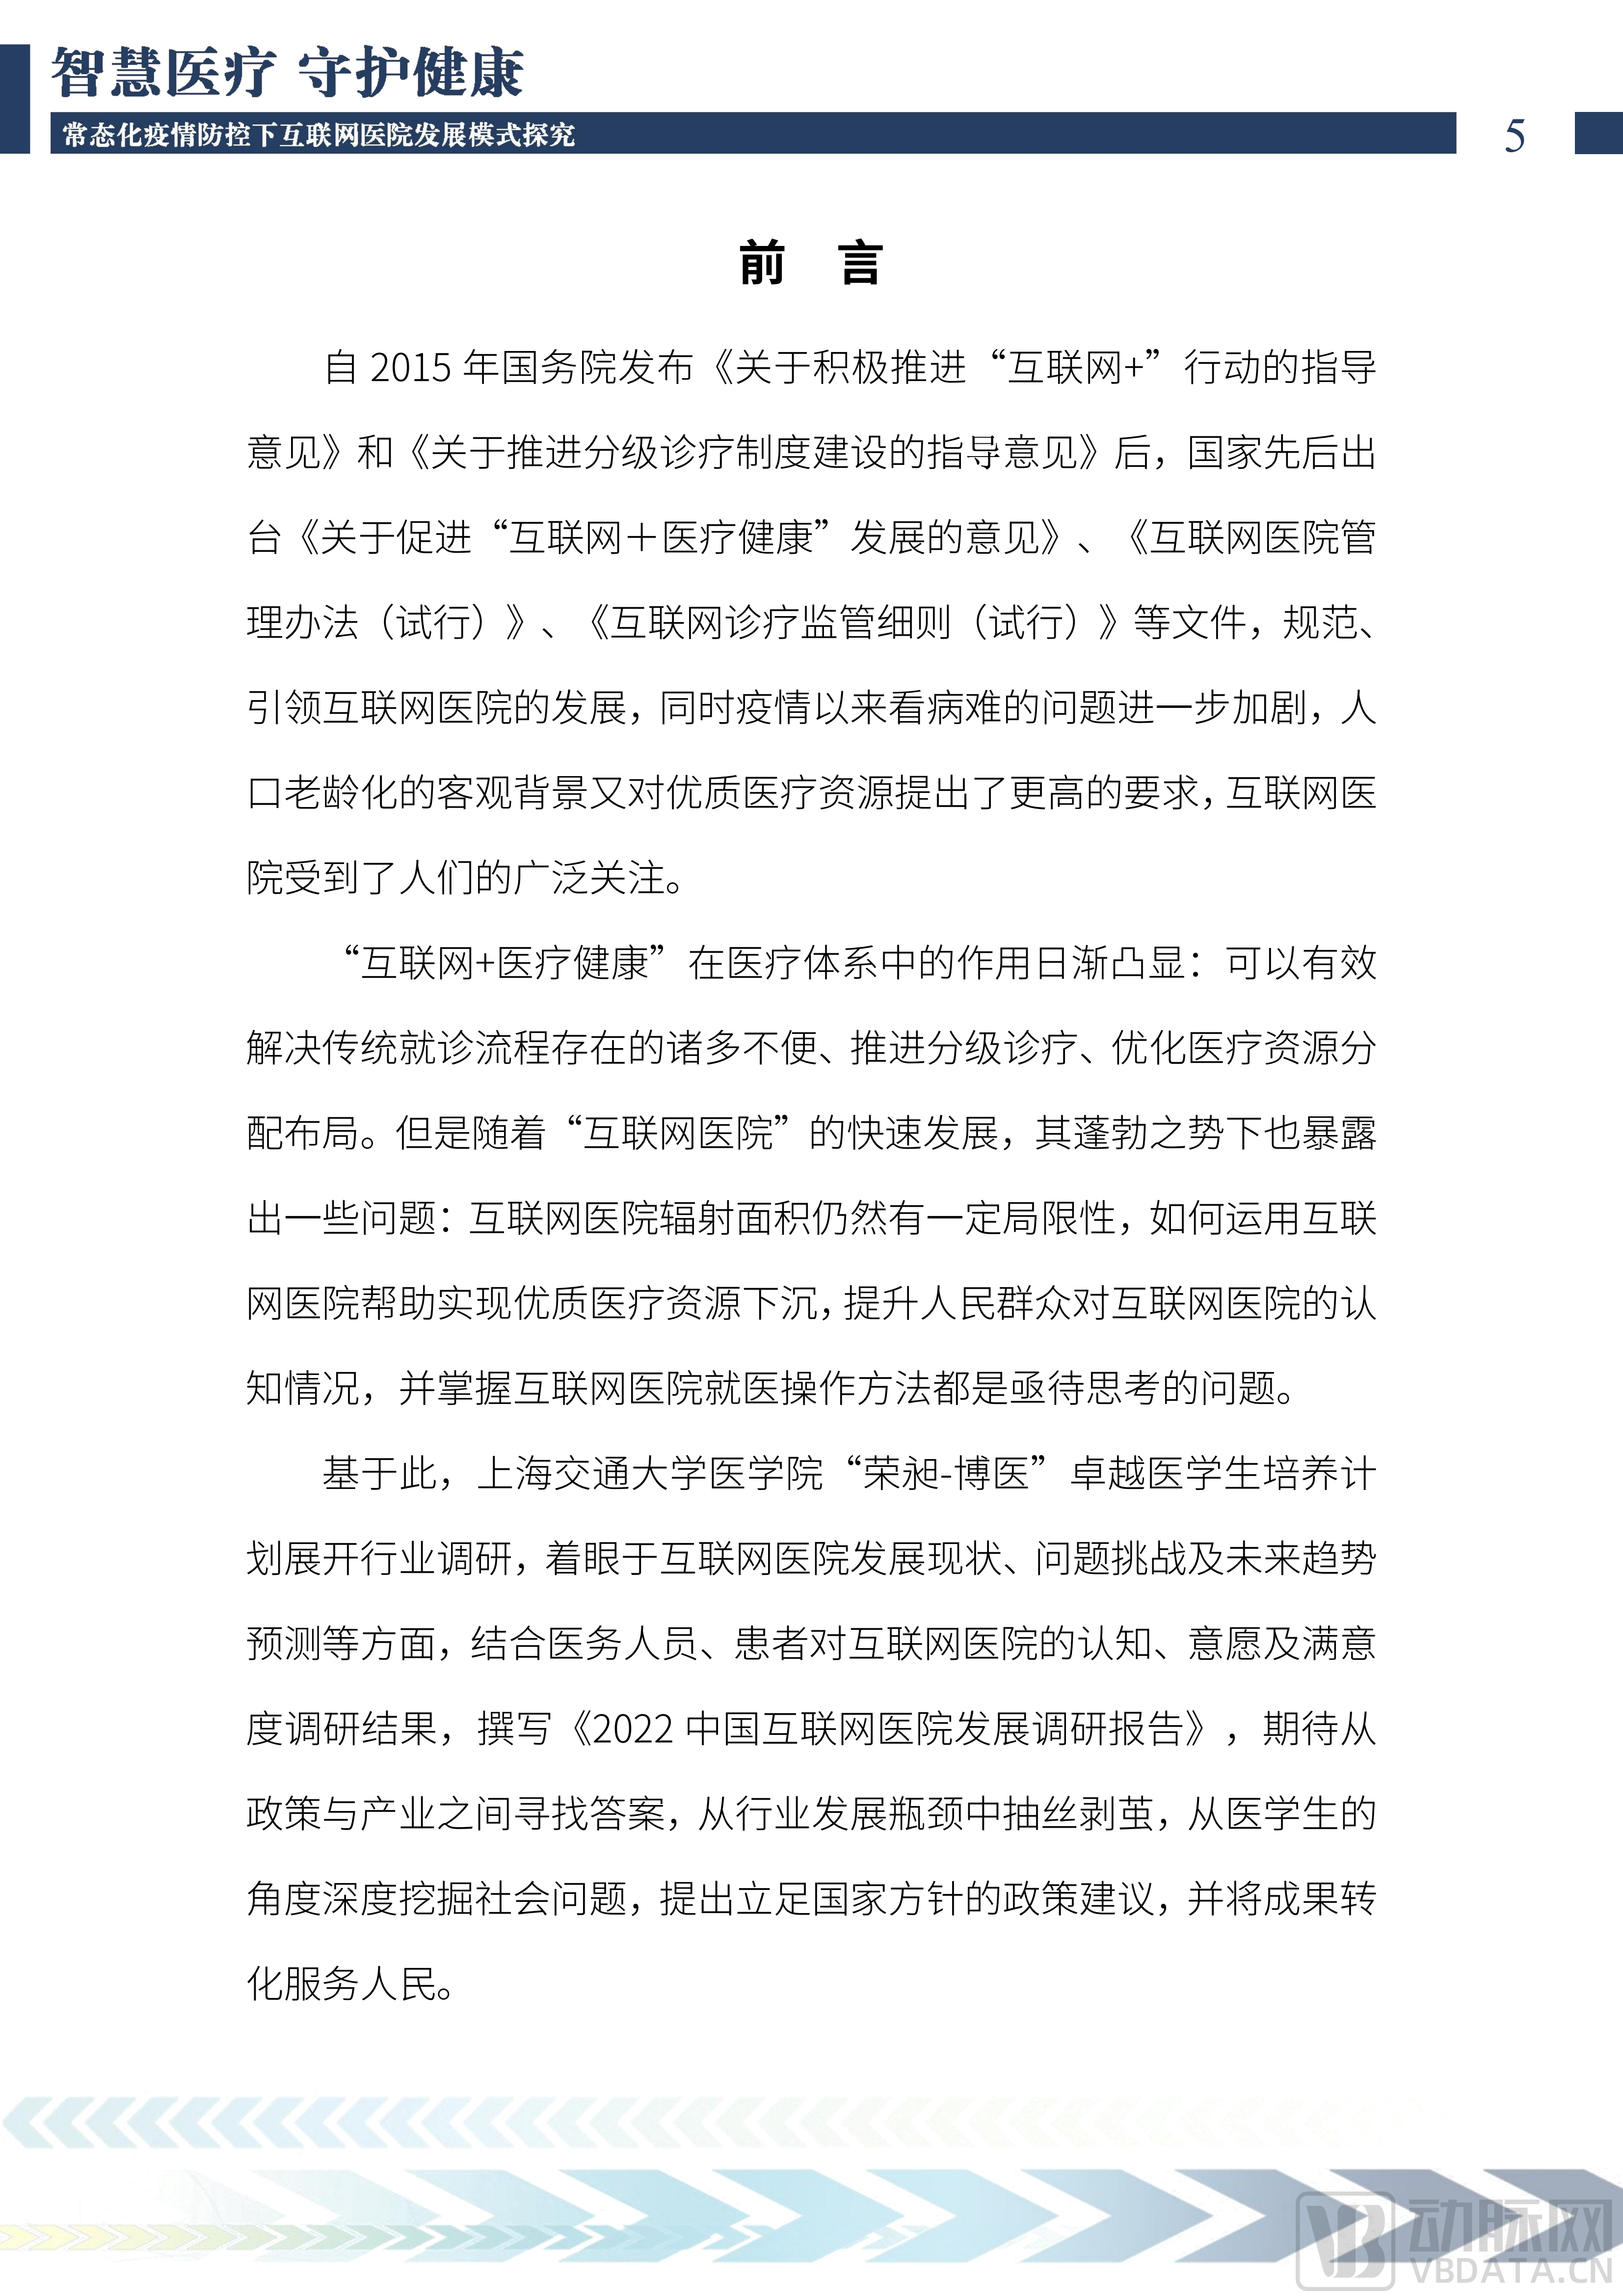 2022中国互联网医院发展调研报告(1)_06.png